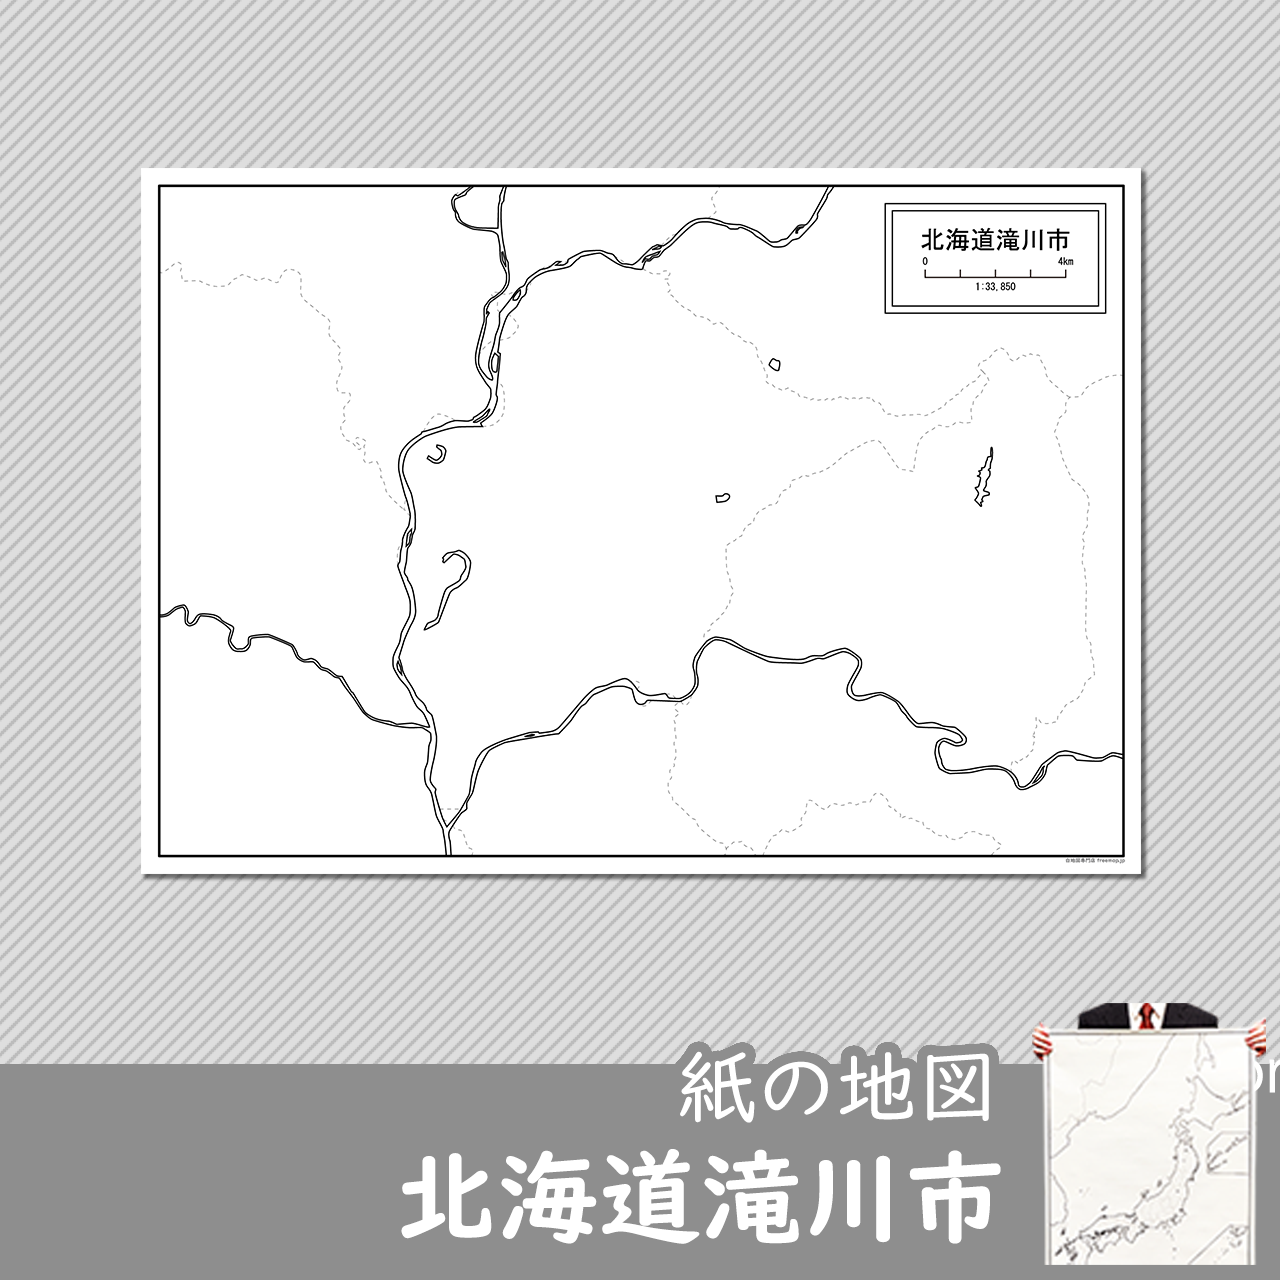 滝川市の紙の白地図のサムネイル